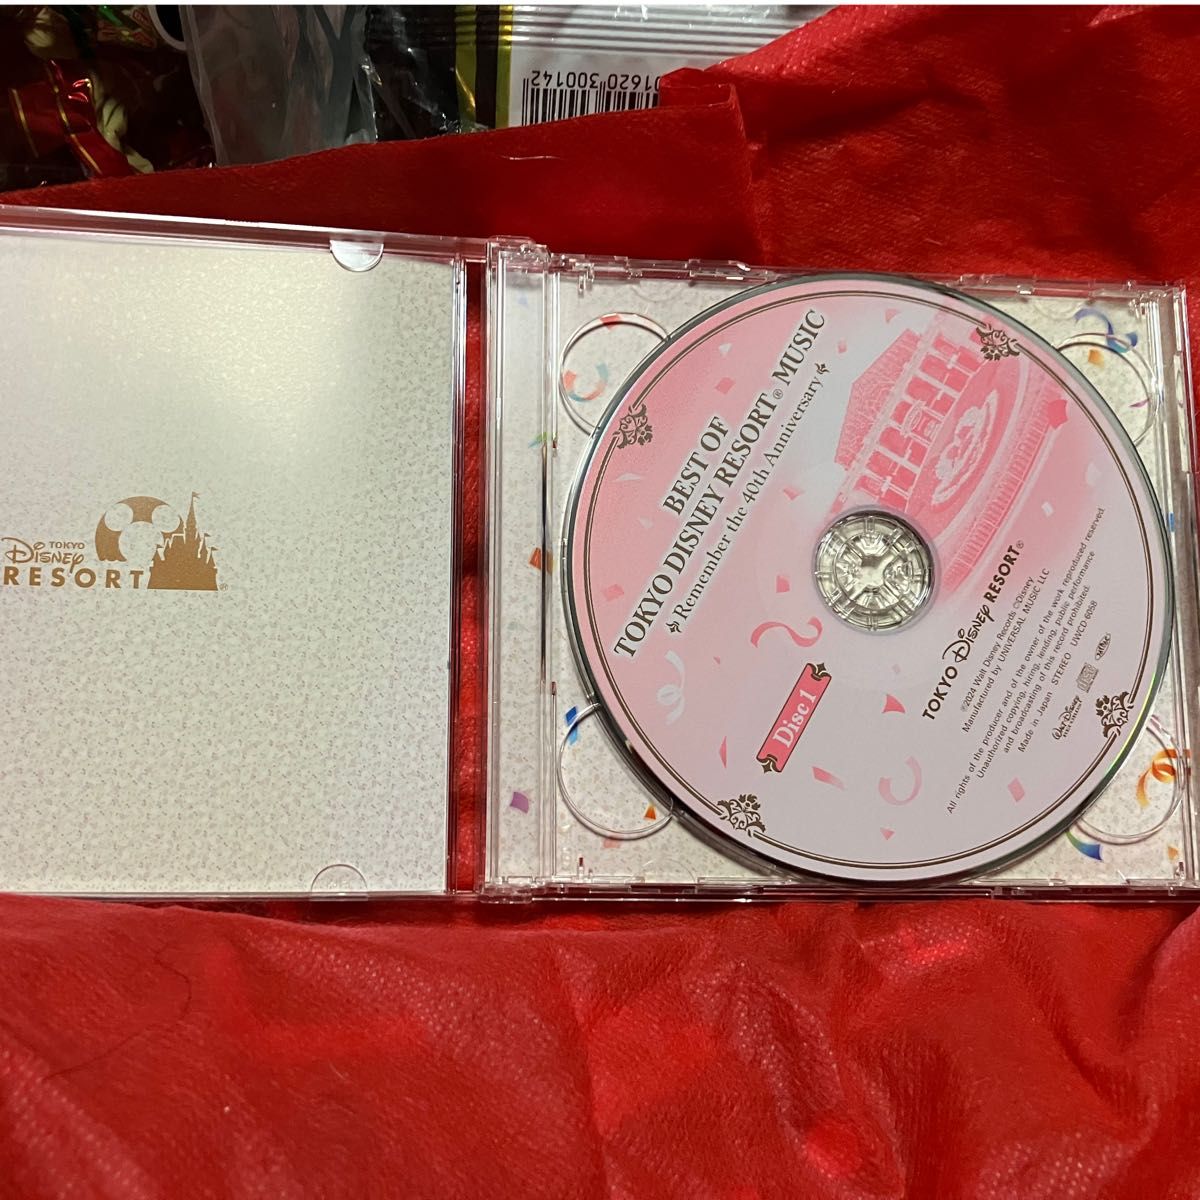 東京ディズニーリゾート 2CD/ベストオブ東京ディズニーリゾート (R) ミュージック リメンバー40thアニバーサリー 